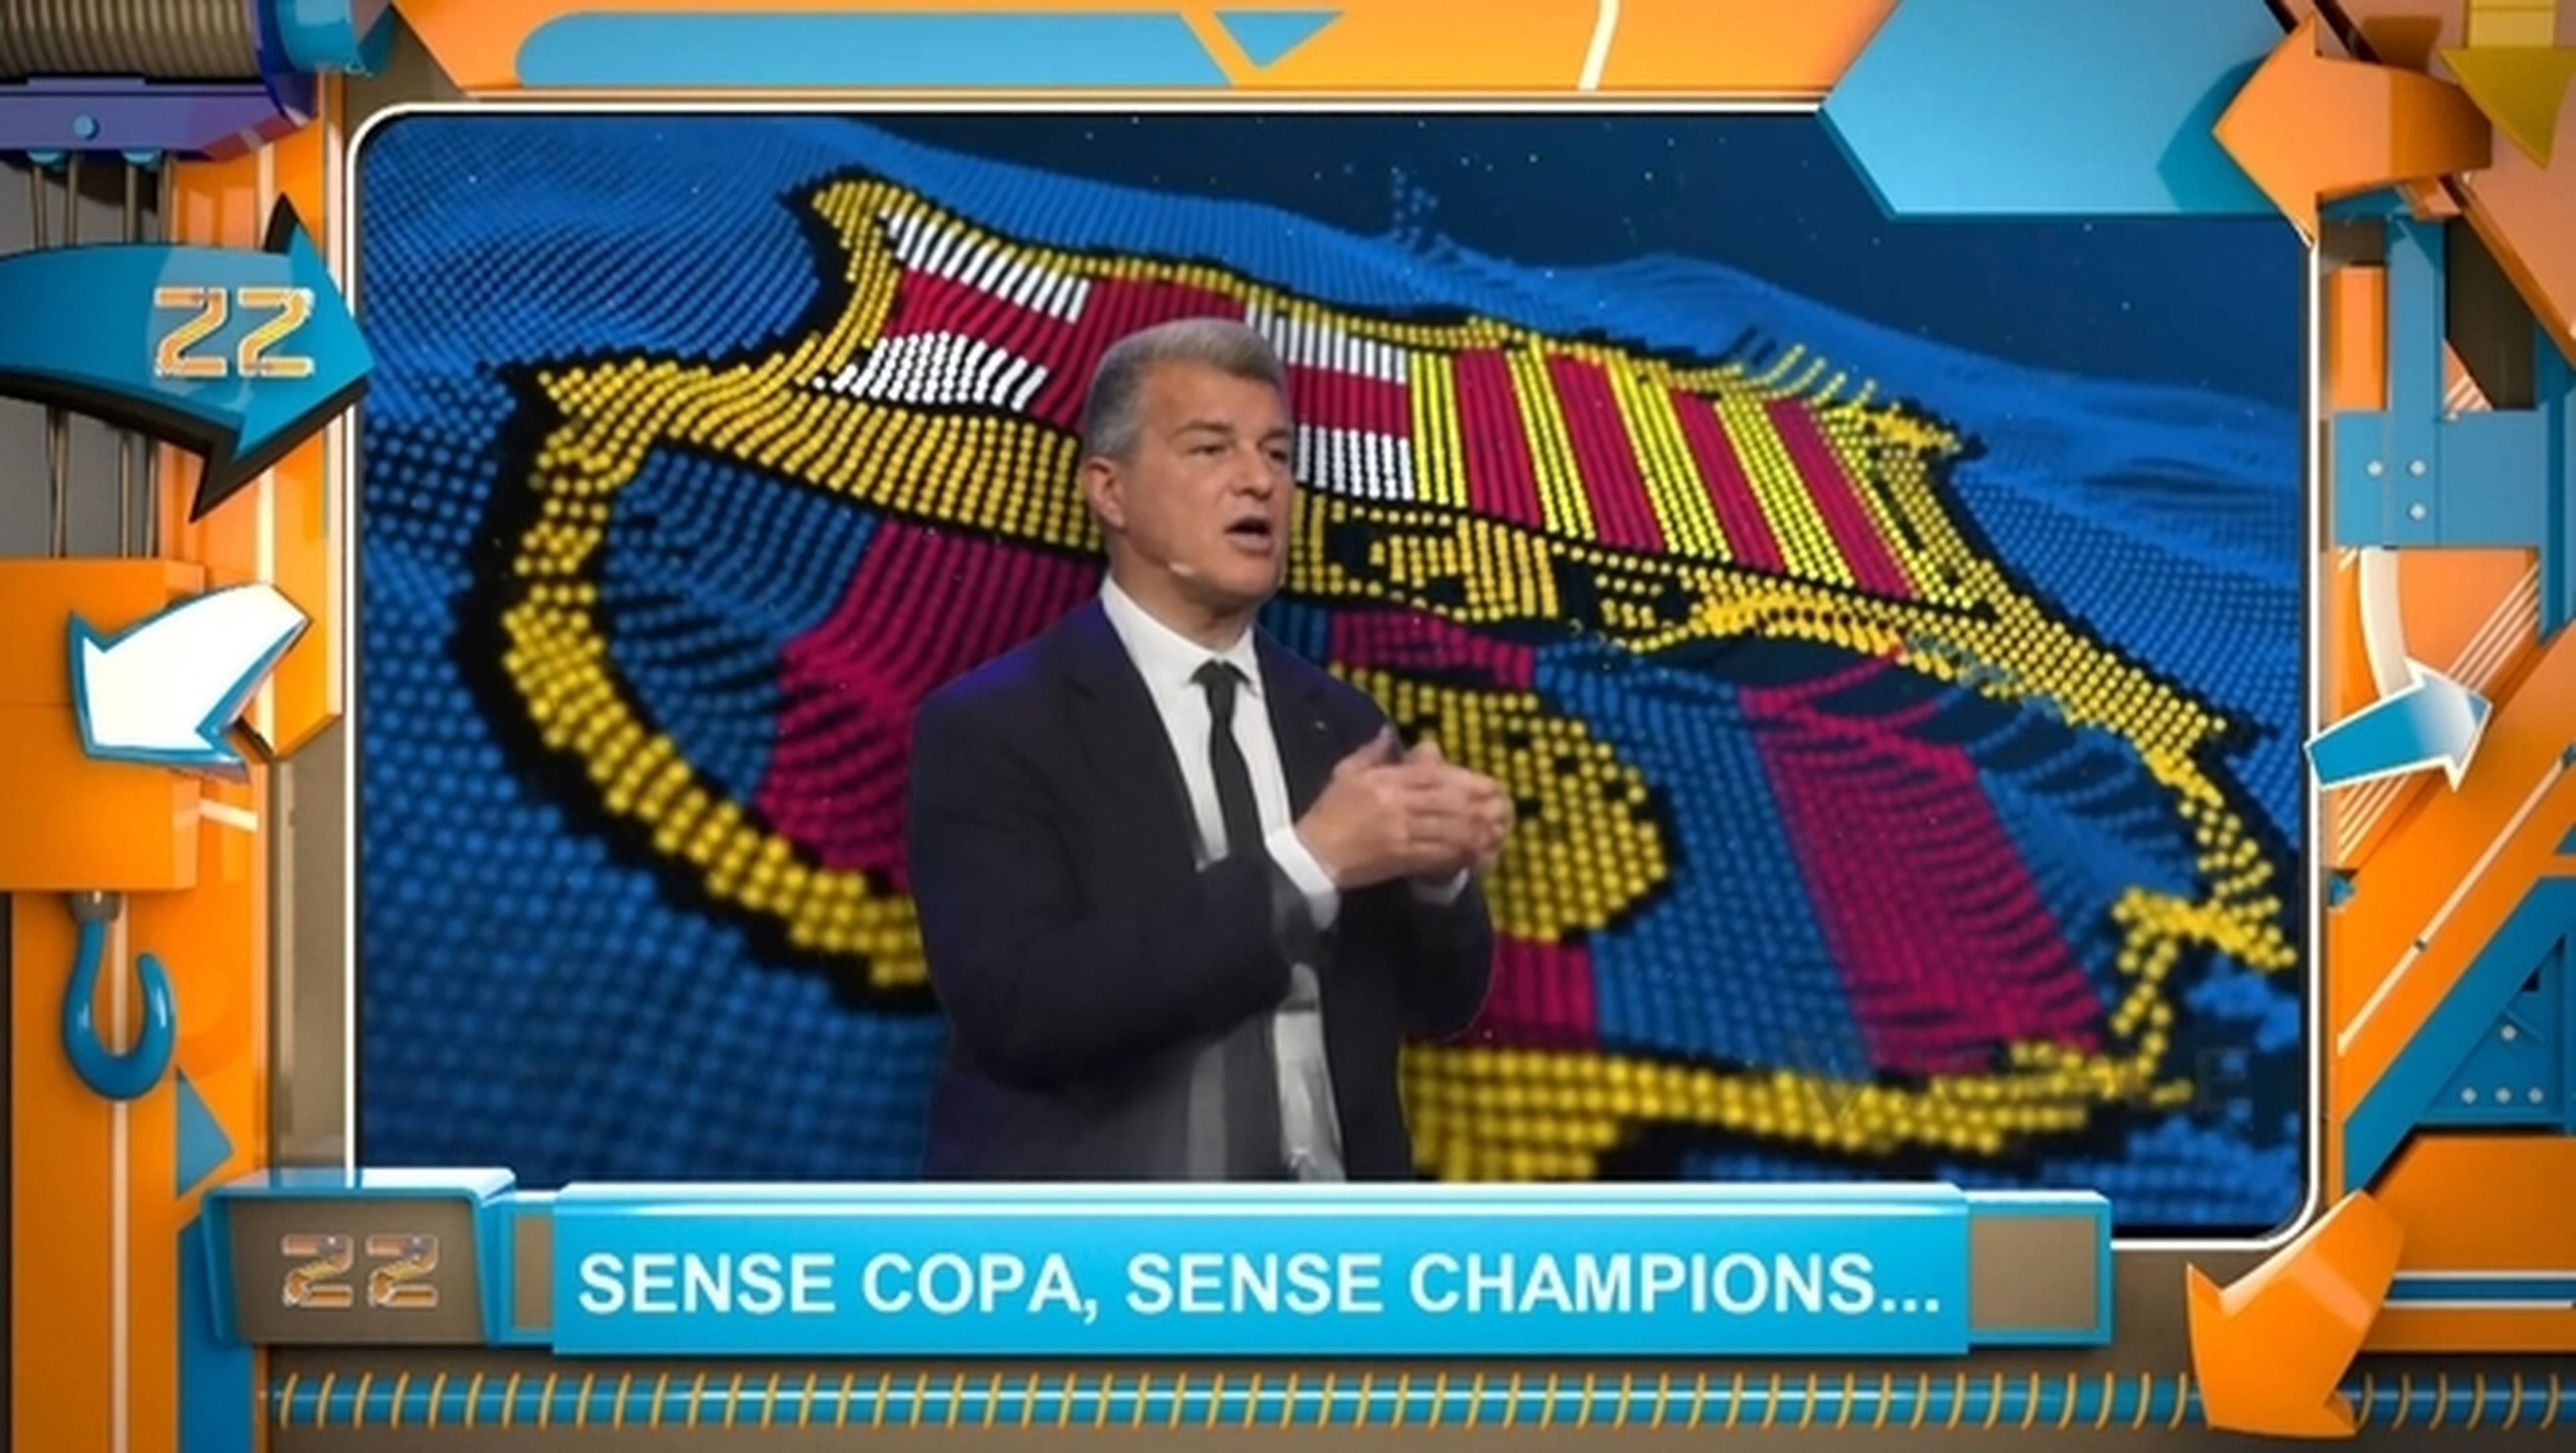 Sense Copa, sense Champions